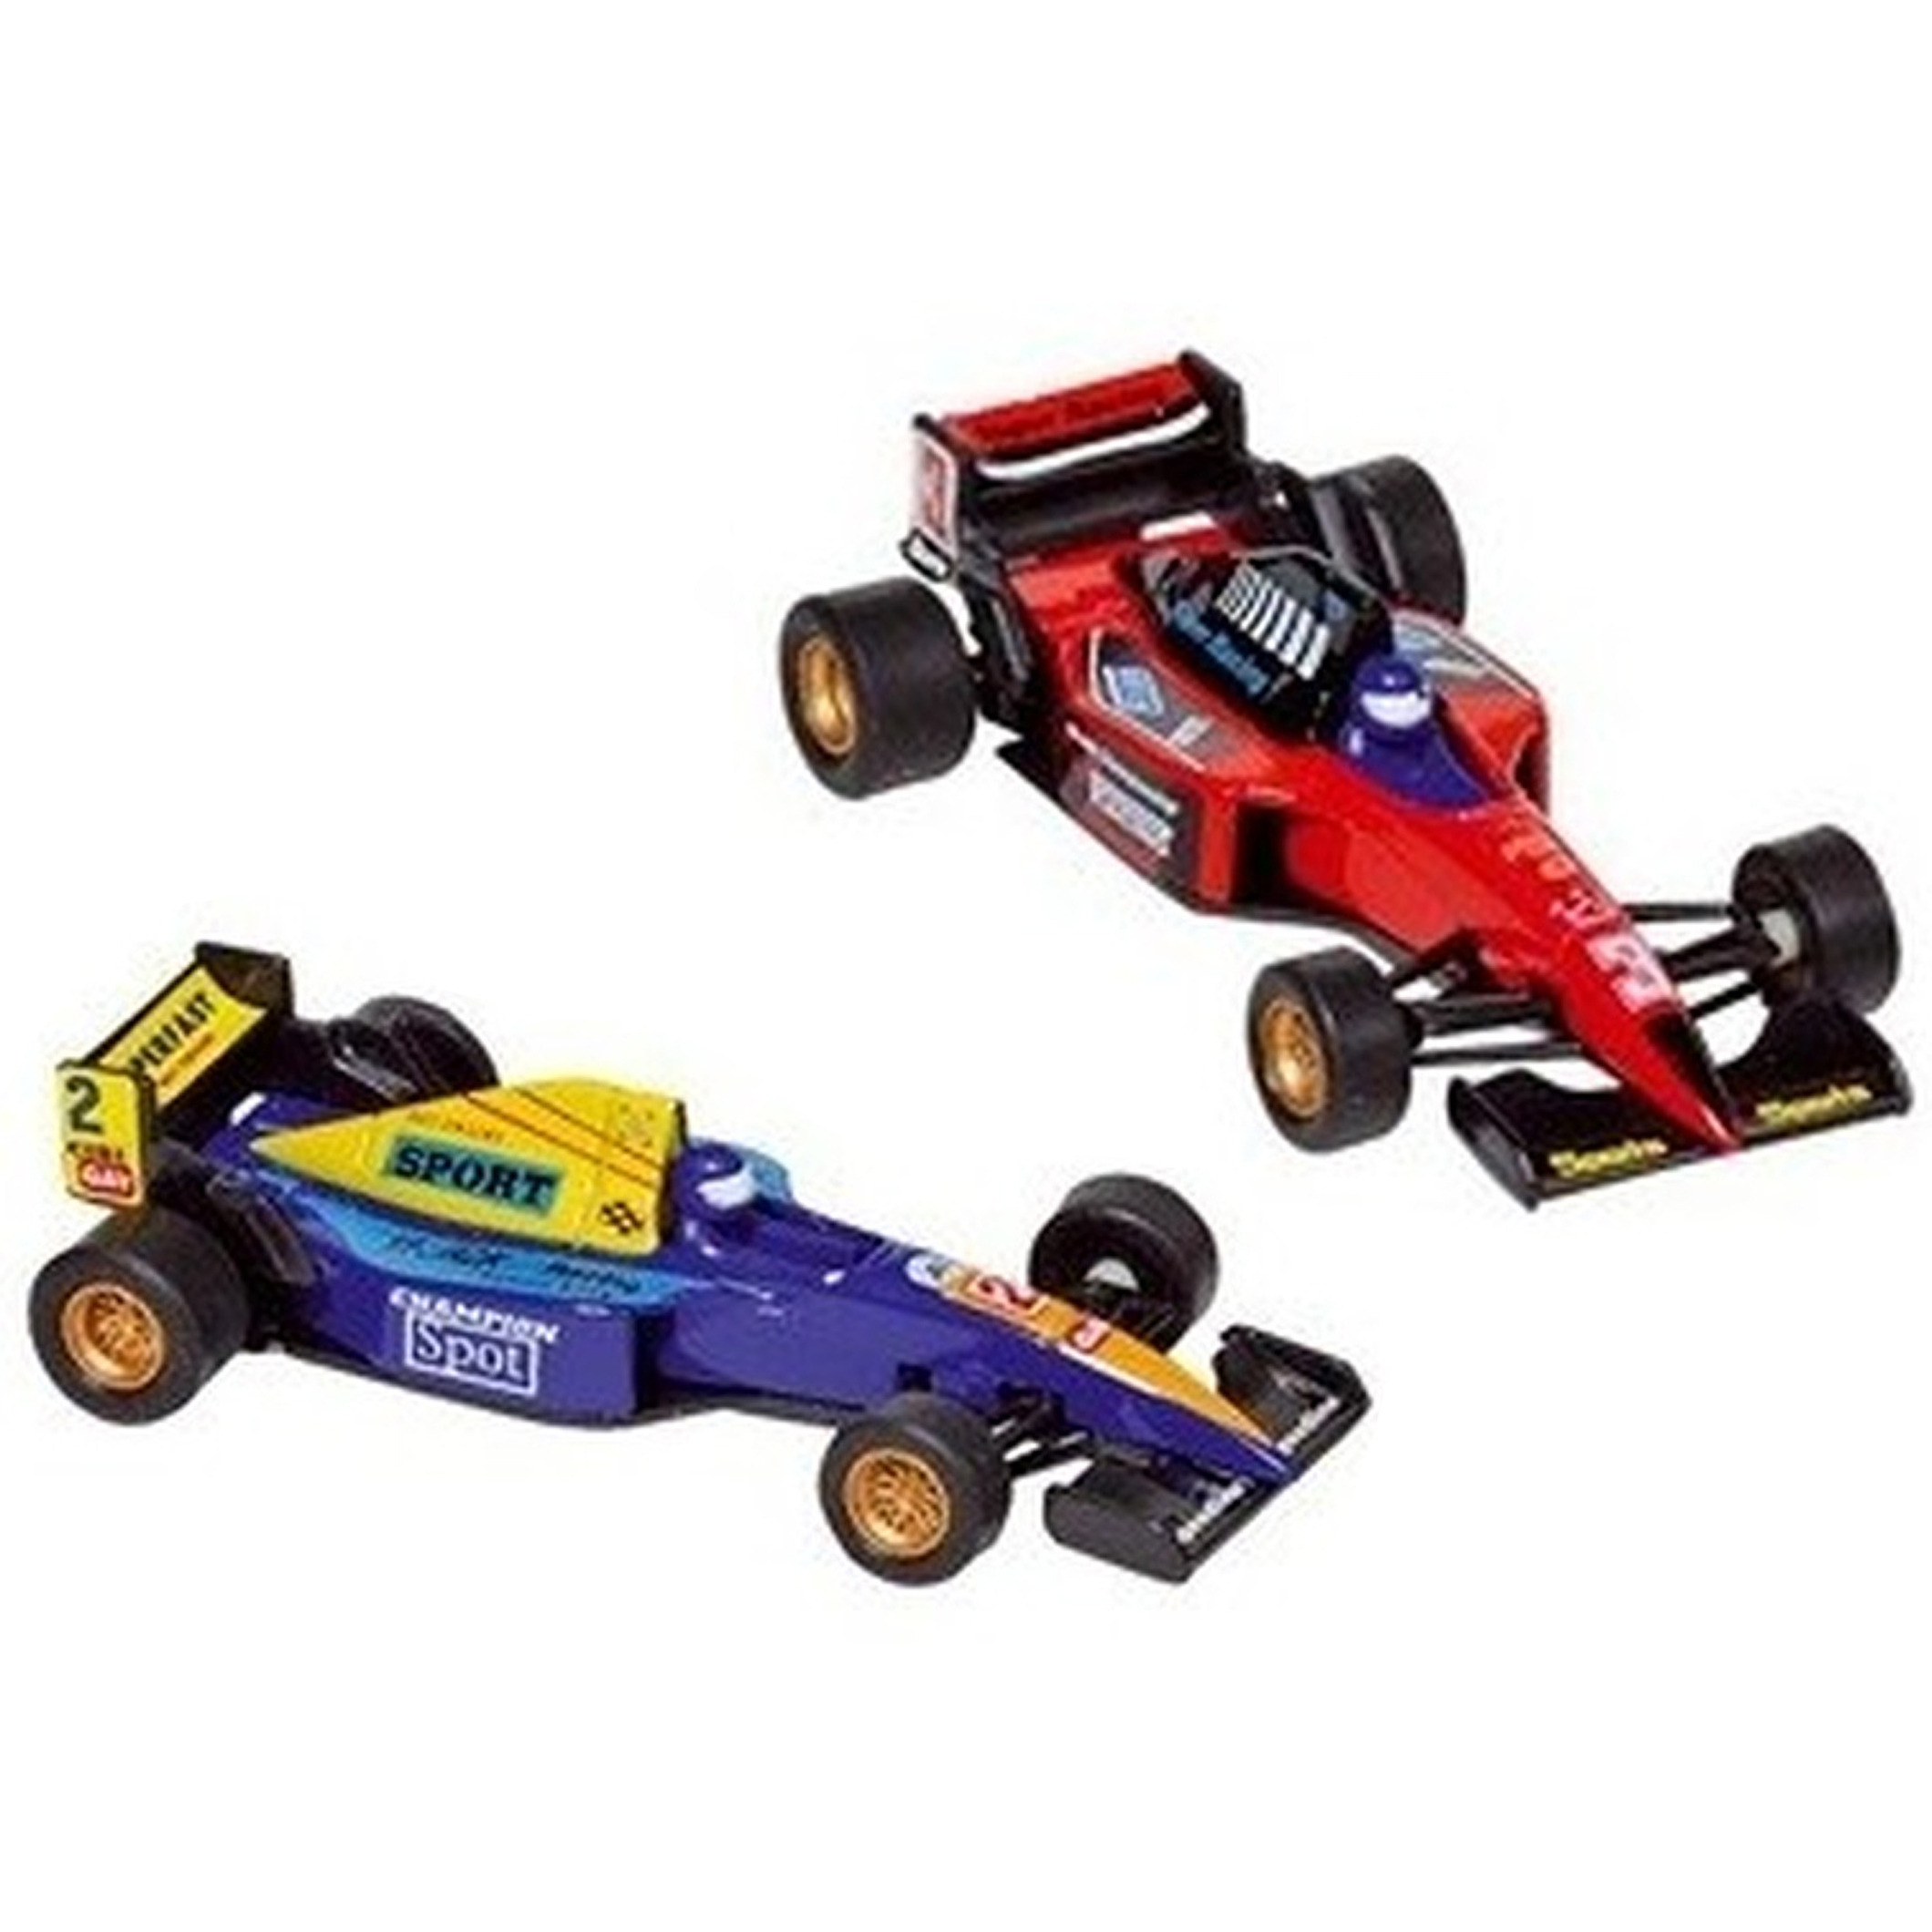 Raceauto speelgoed set van 2x stuks Formule 1 wagens 10 cm